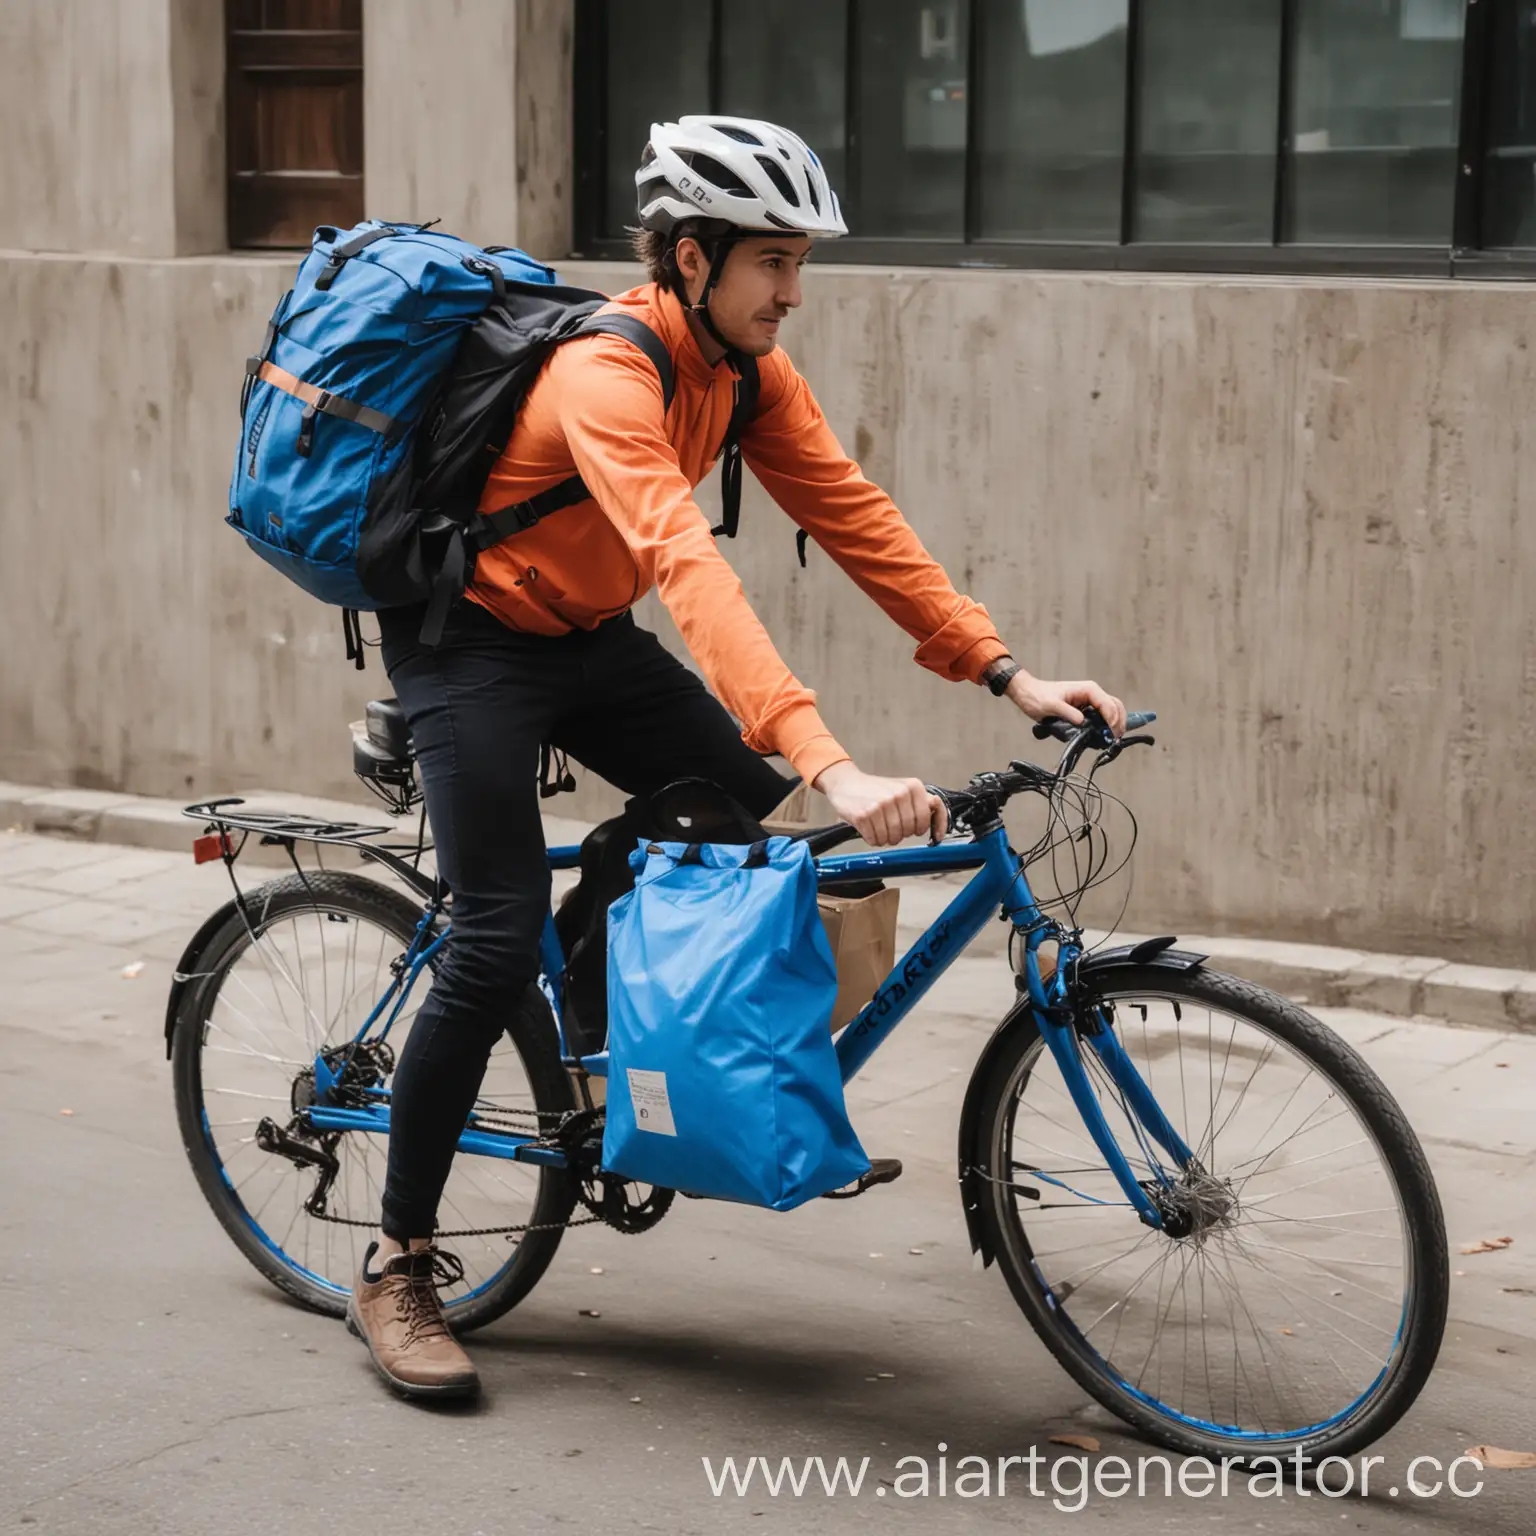 скоростной курьер на велосипеде с синей сумкой